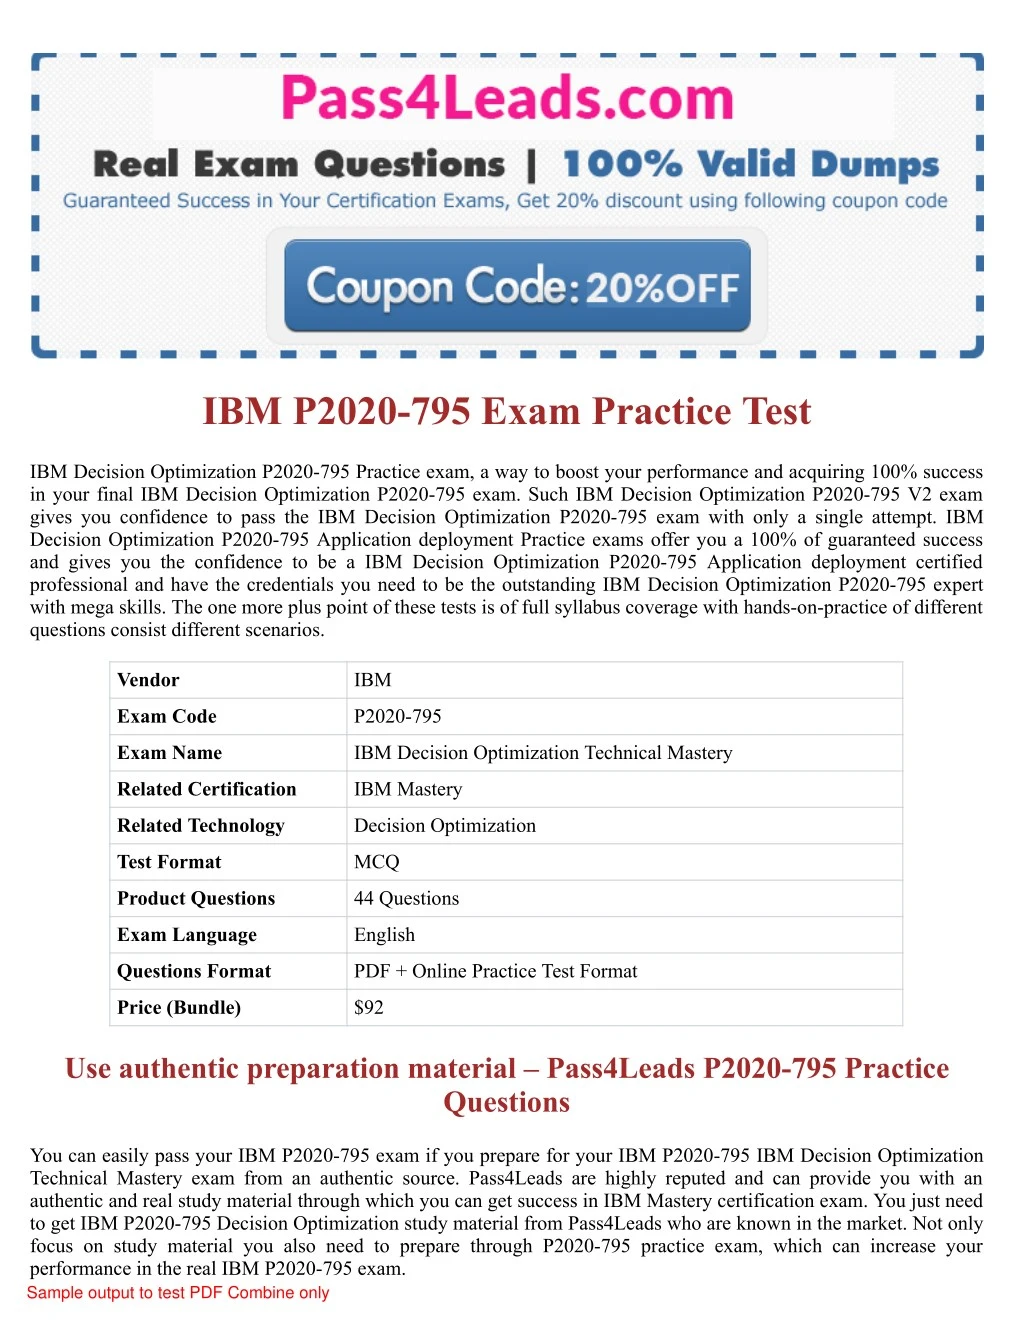 ibm p2020 795 exam practice test